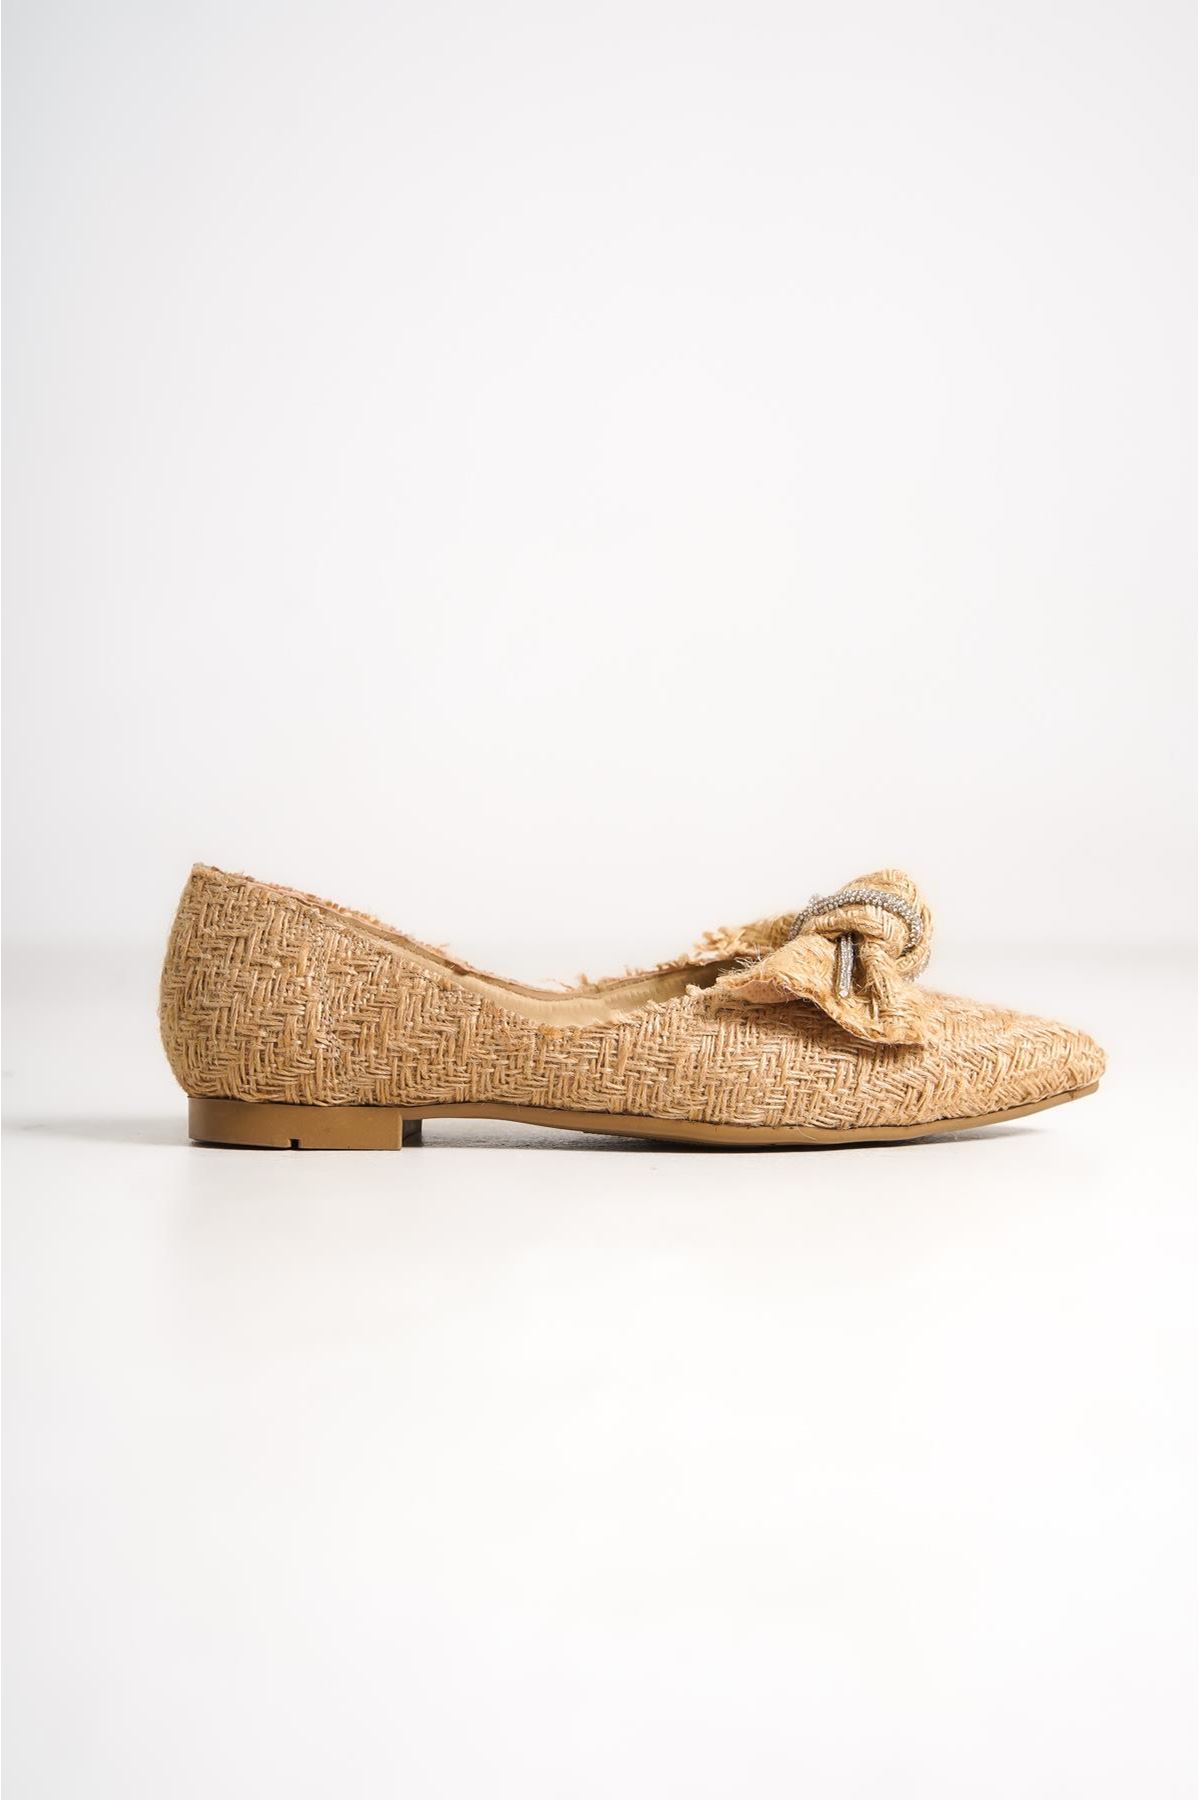 Samber Kadın Babet Ayakkabı Hasır Fiyonklu- Taşlı